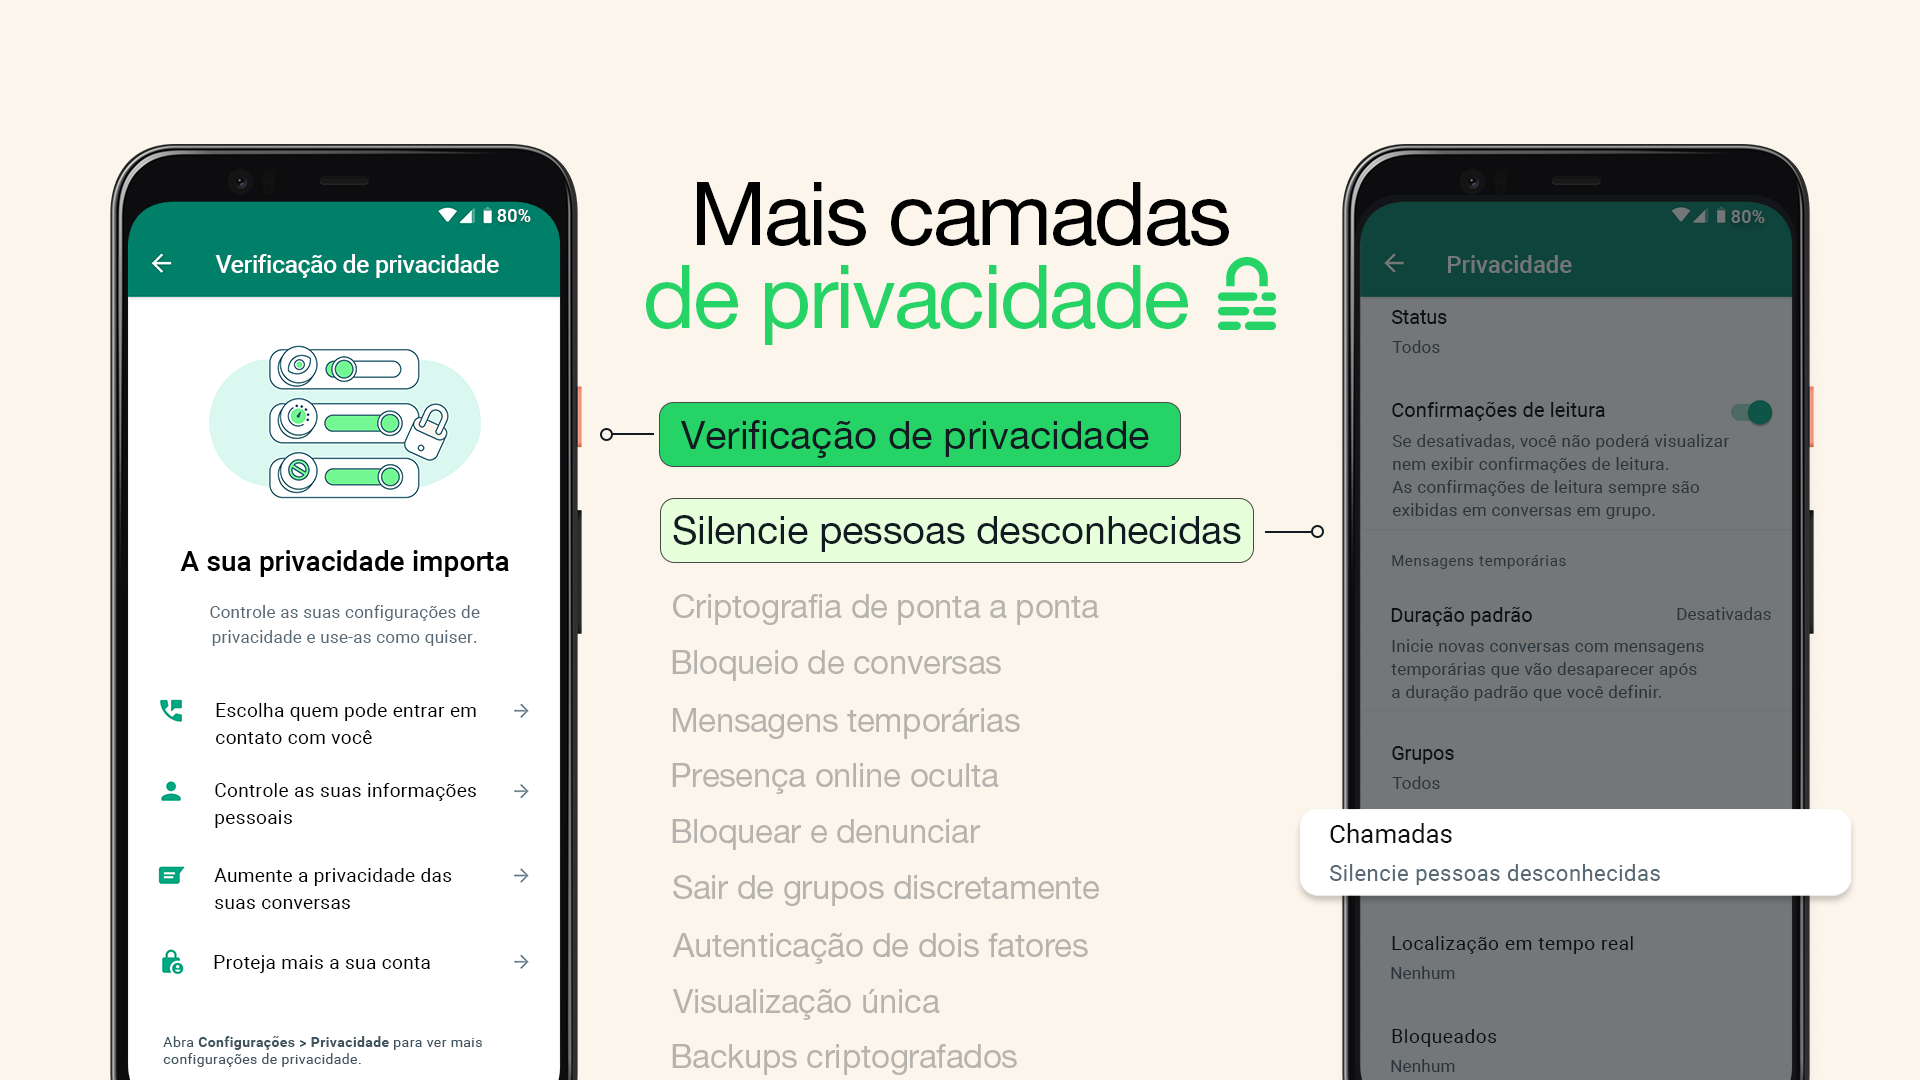 Dois prints do WhatsApp mostrando os novos recursos, com o título “Mais camadas de privacidade”.